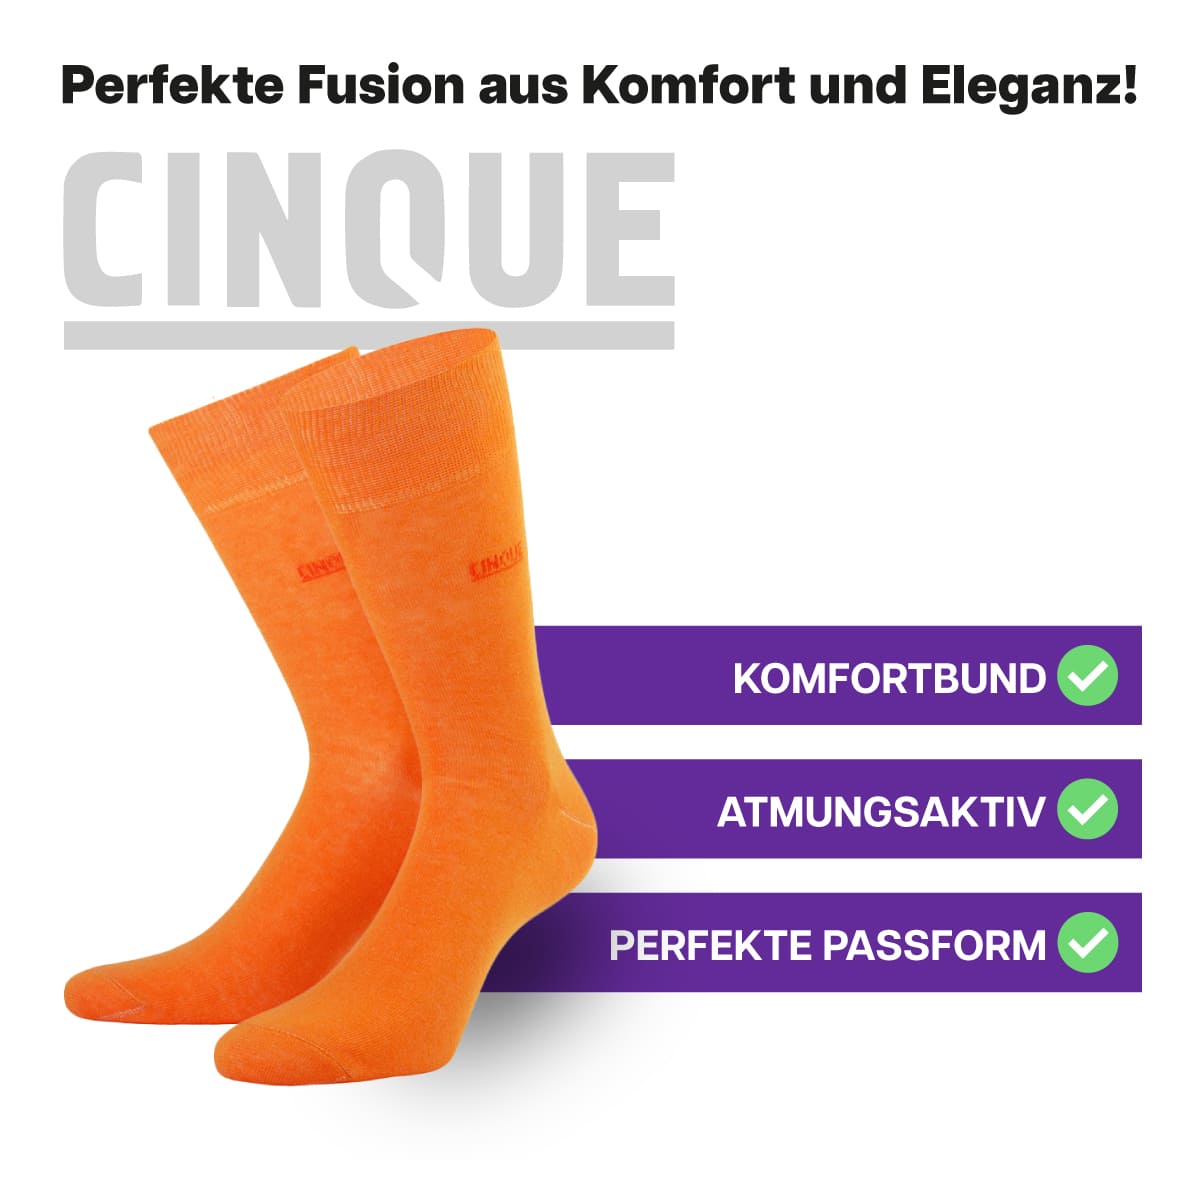 Erstklassige, atmungsaktive Business Socken von CINQUE designed by PATRON SOCKS mit Komfortbund. Perfekte Passform!